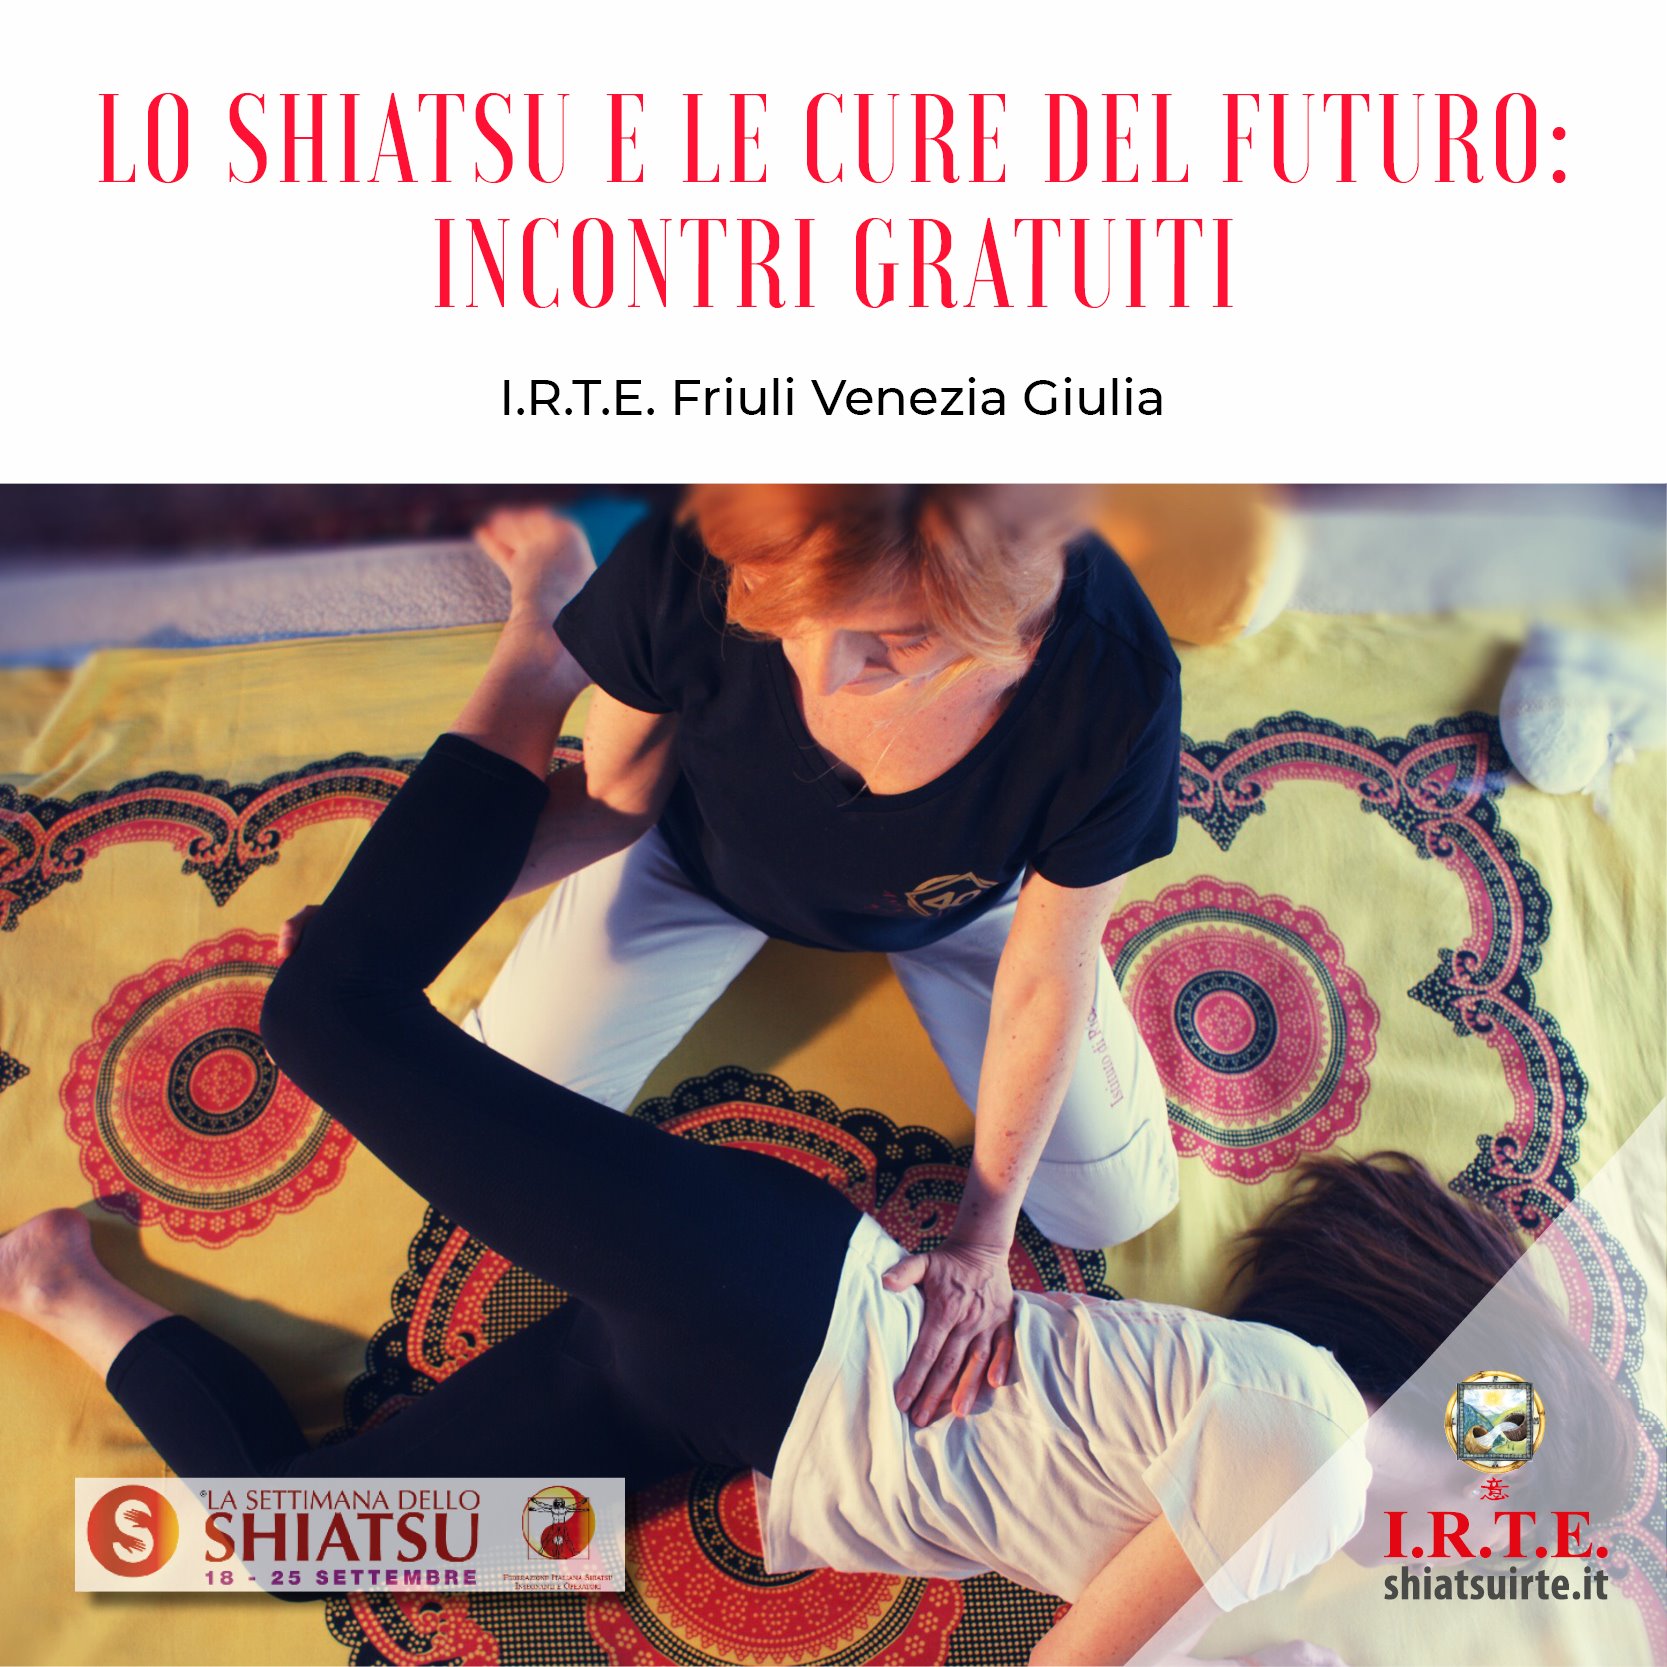 18-25 settembre 2020: la Settimana dello Shiatsu in Friuli Venezia Giulia - Incontri gratuiti